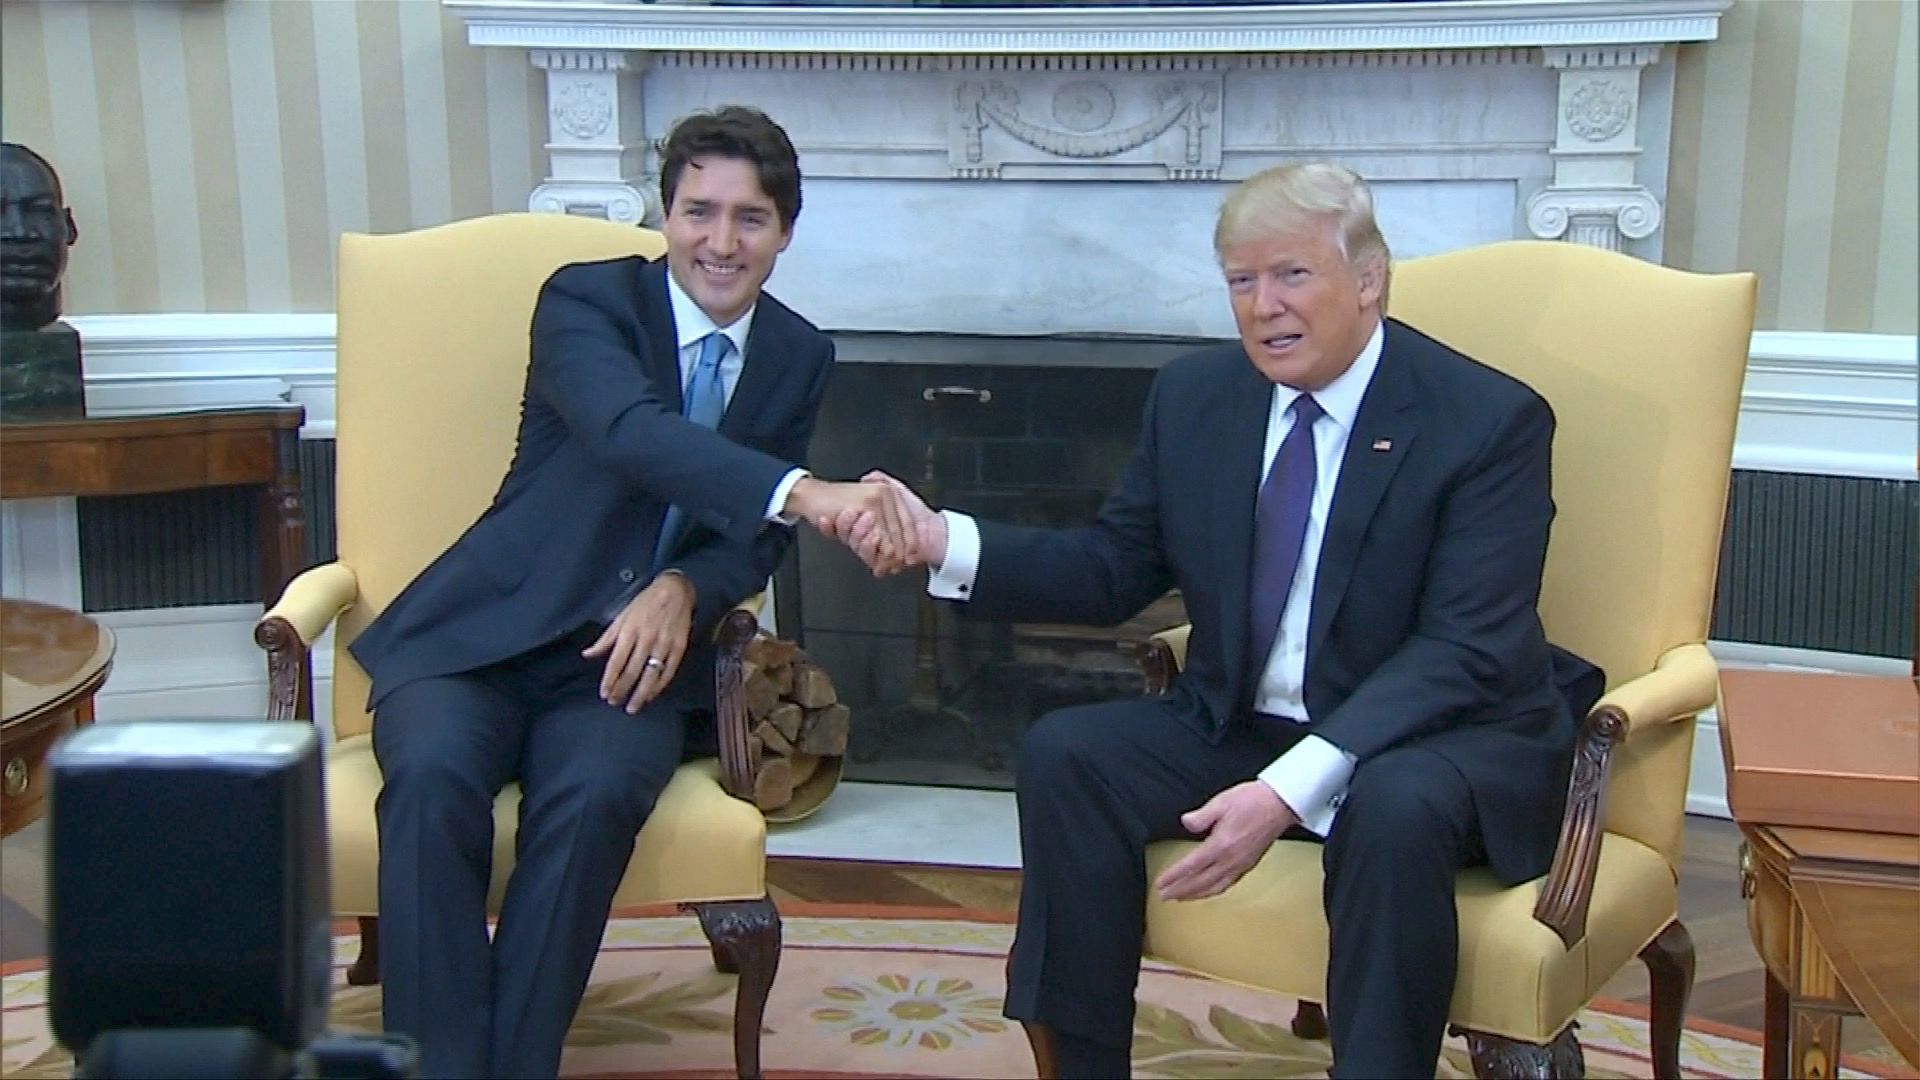 Kanadský premiér Trudeau "přelstil" Trumpa, jako jediný ustál jeho pověstný stisk ruky